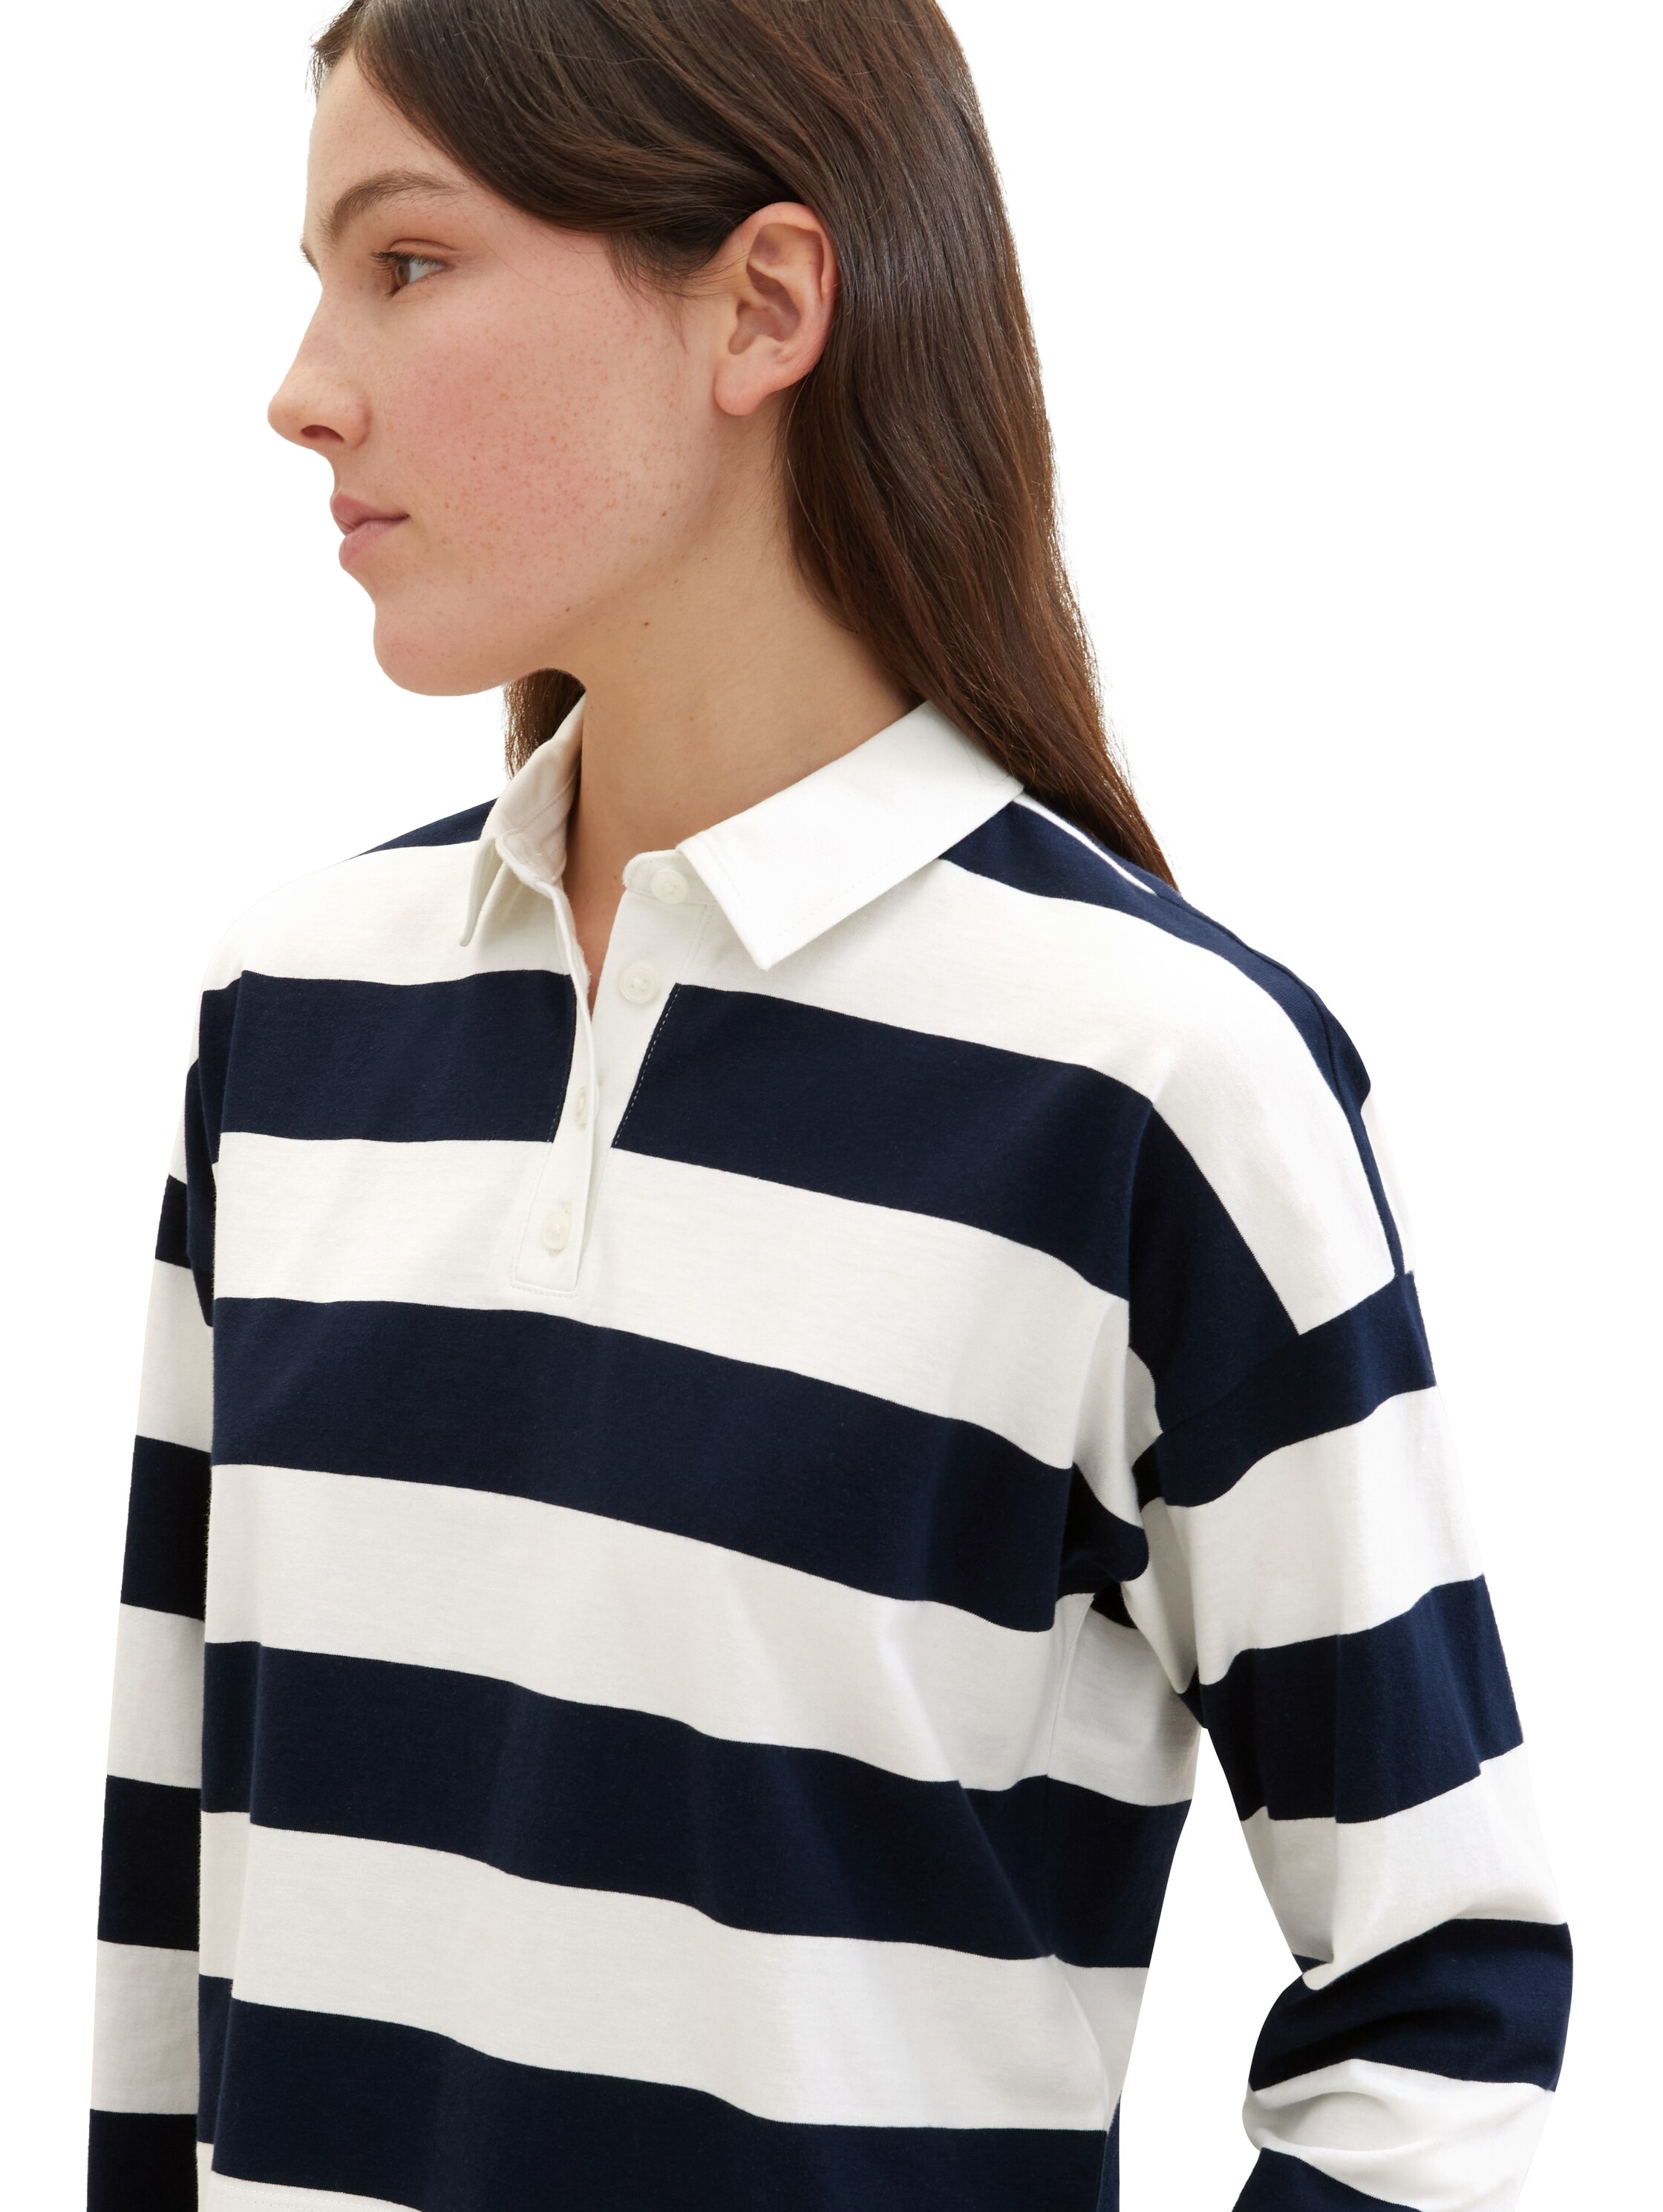 TOM TAILOR Denim Langarm-Poloshirt, mit Streifen und Polokragen, extra kurz